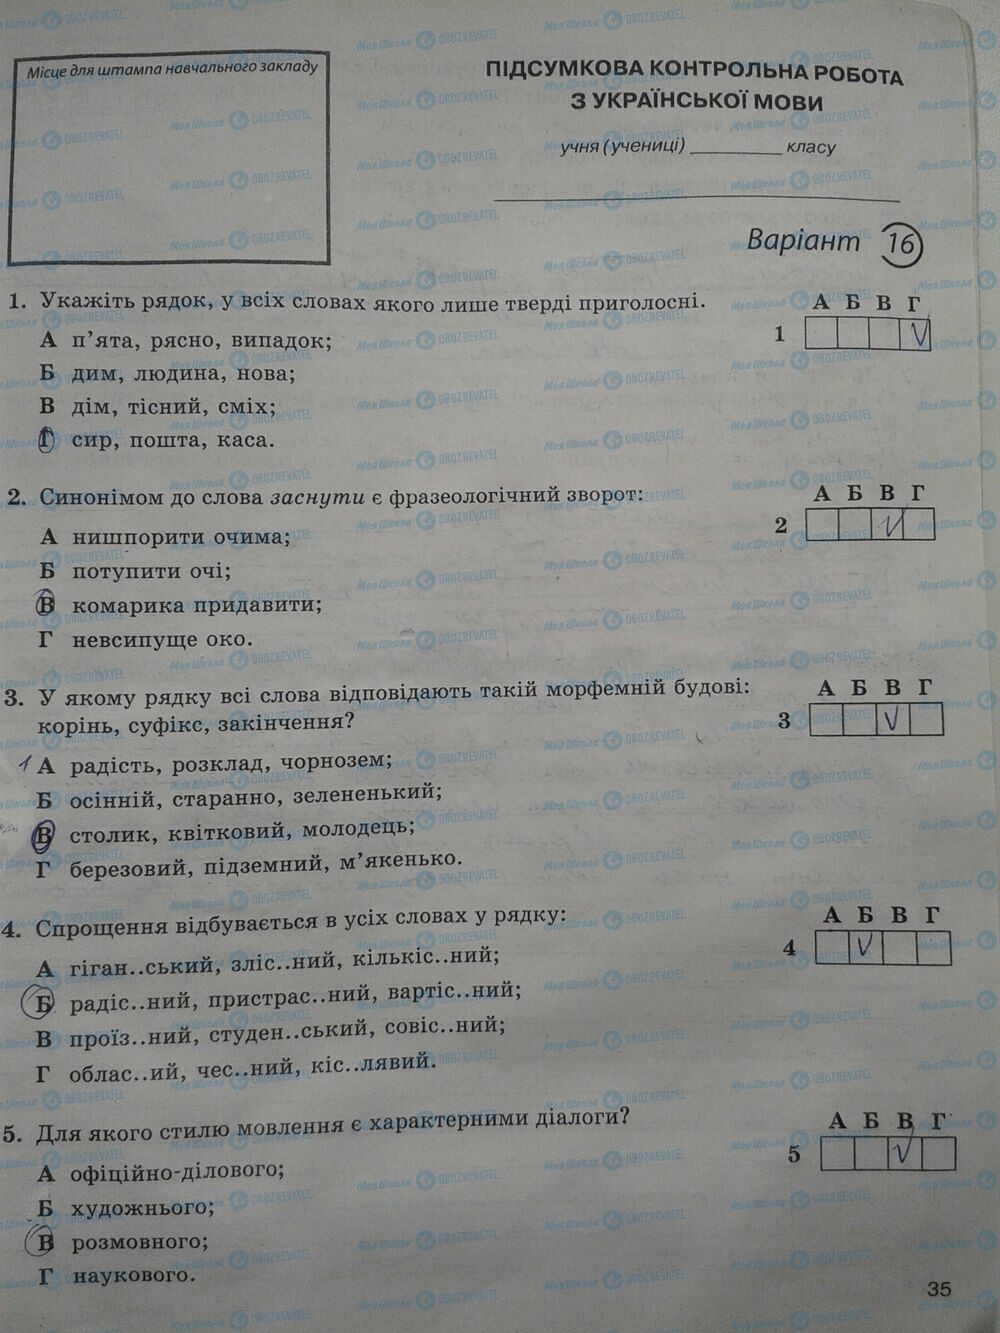 ГДЗ Укр мова 5 класс страница стр. 35